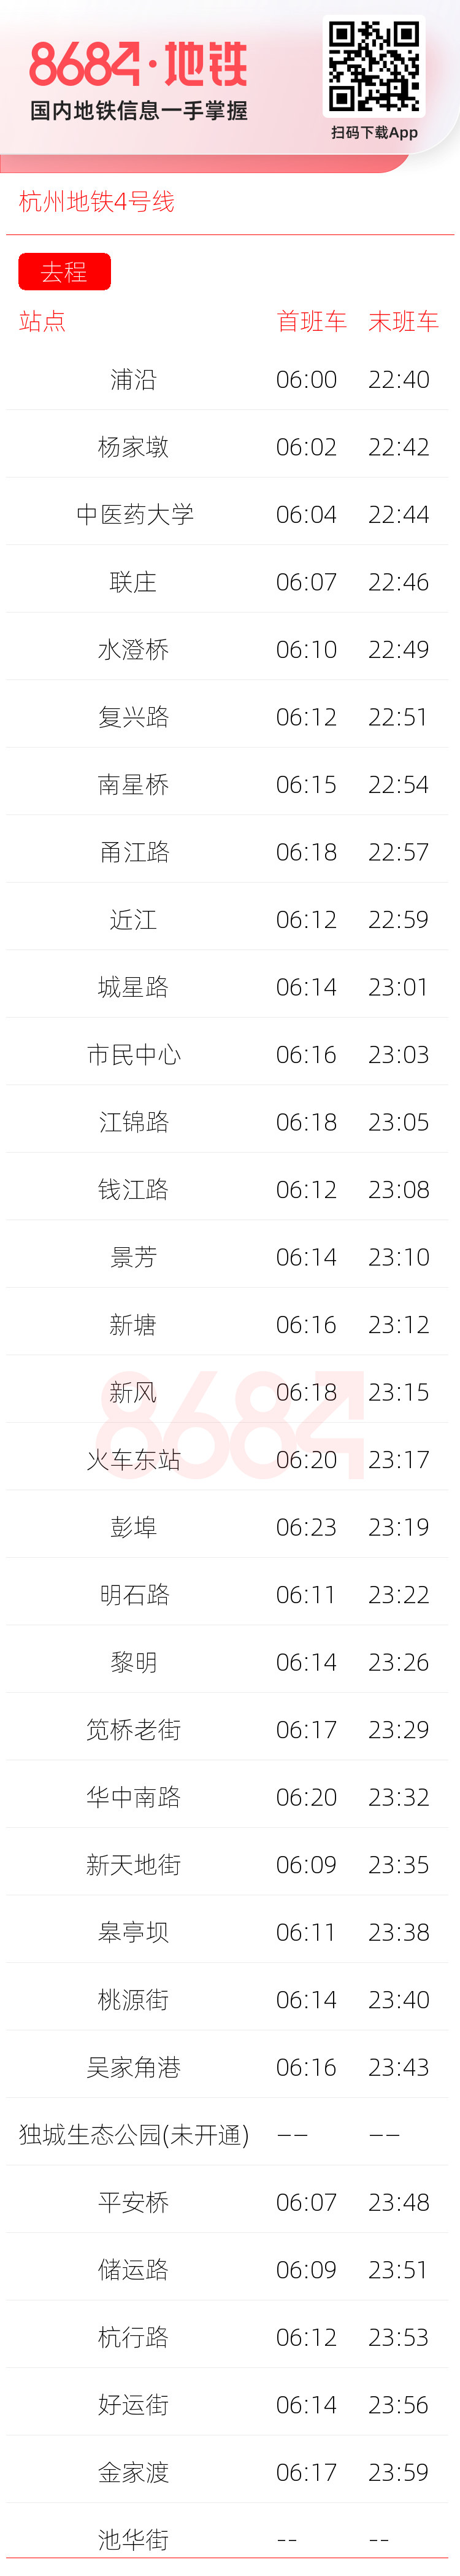 杭州地铁4号线运营时间表